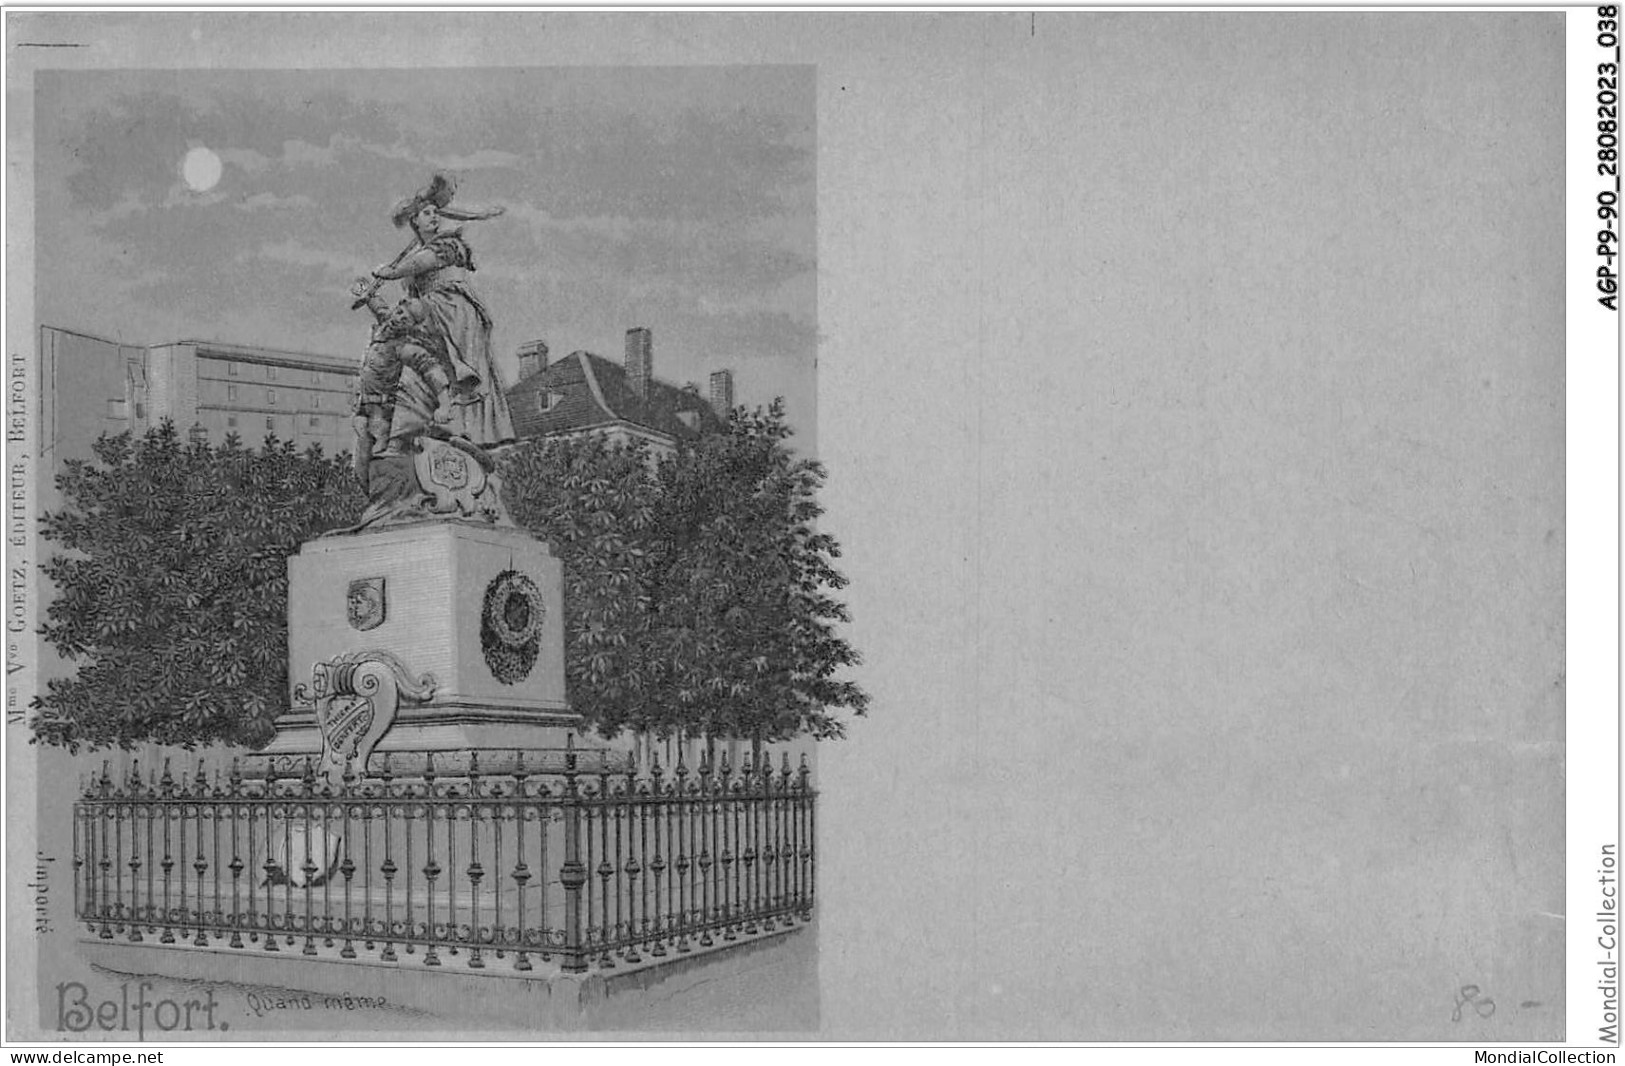 AGPP9-0743-90 - BELFORT-VILLE - Statue Quand-meme  - Belfort - City